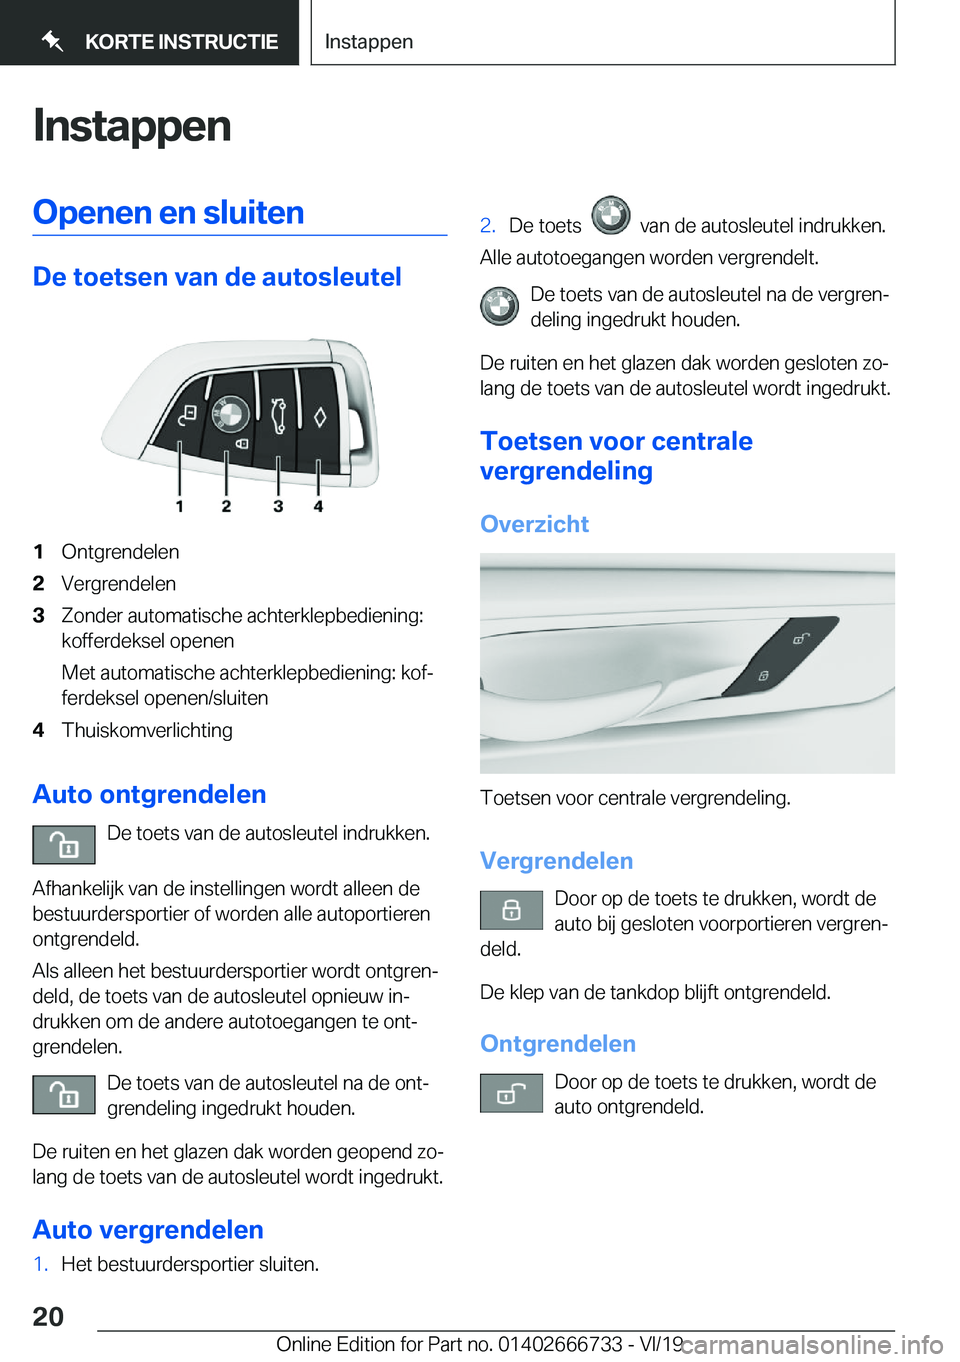 BMW M5 2020  Instructieboekjes (in Dutch) �I�n�s�t�a�p�p�e�n�O�p�e�n�e�n��e�n��s�l�u�i�t�e�n
�D�e��t�o�e�t�s�e�n��v�a�n��d�e��a�u�t�o�s�l�e�u�t�e�l
�1�O�n�t�g�r�e�n�d�e�l�e�n�2�V�e�r�g�r�e�n�d�e�l�e�n�3�Z�o�n�d�e�r��a�u�t�o�m�a�t�i�s�c